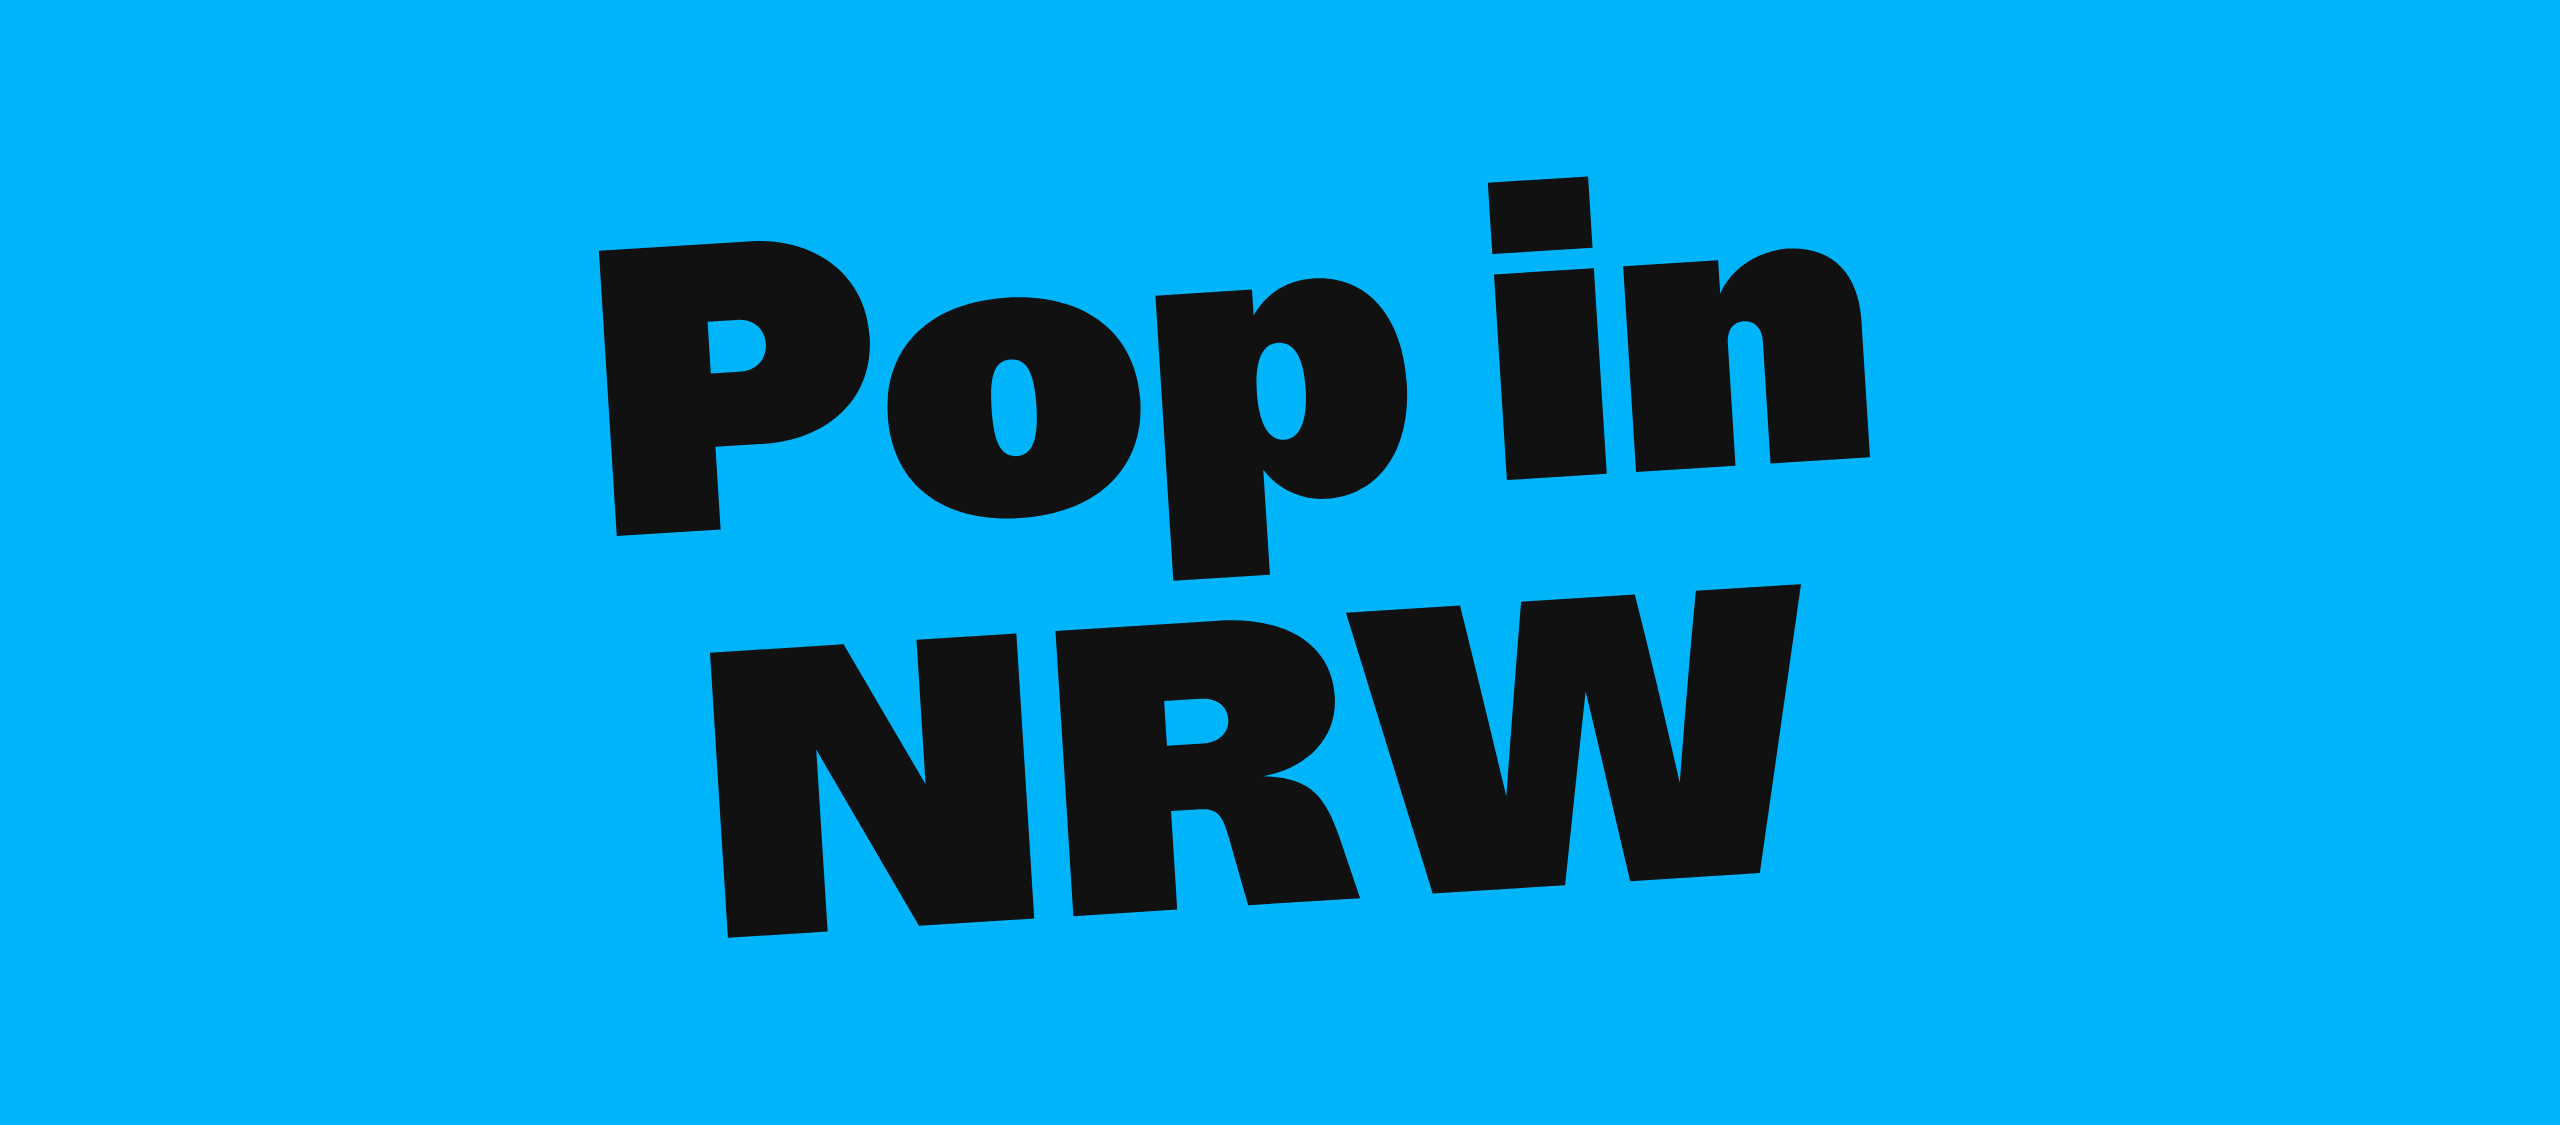 Pop in NRW